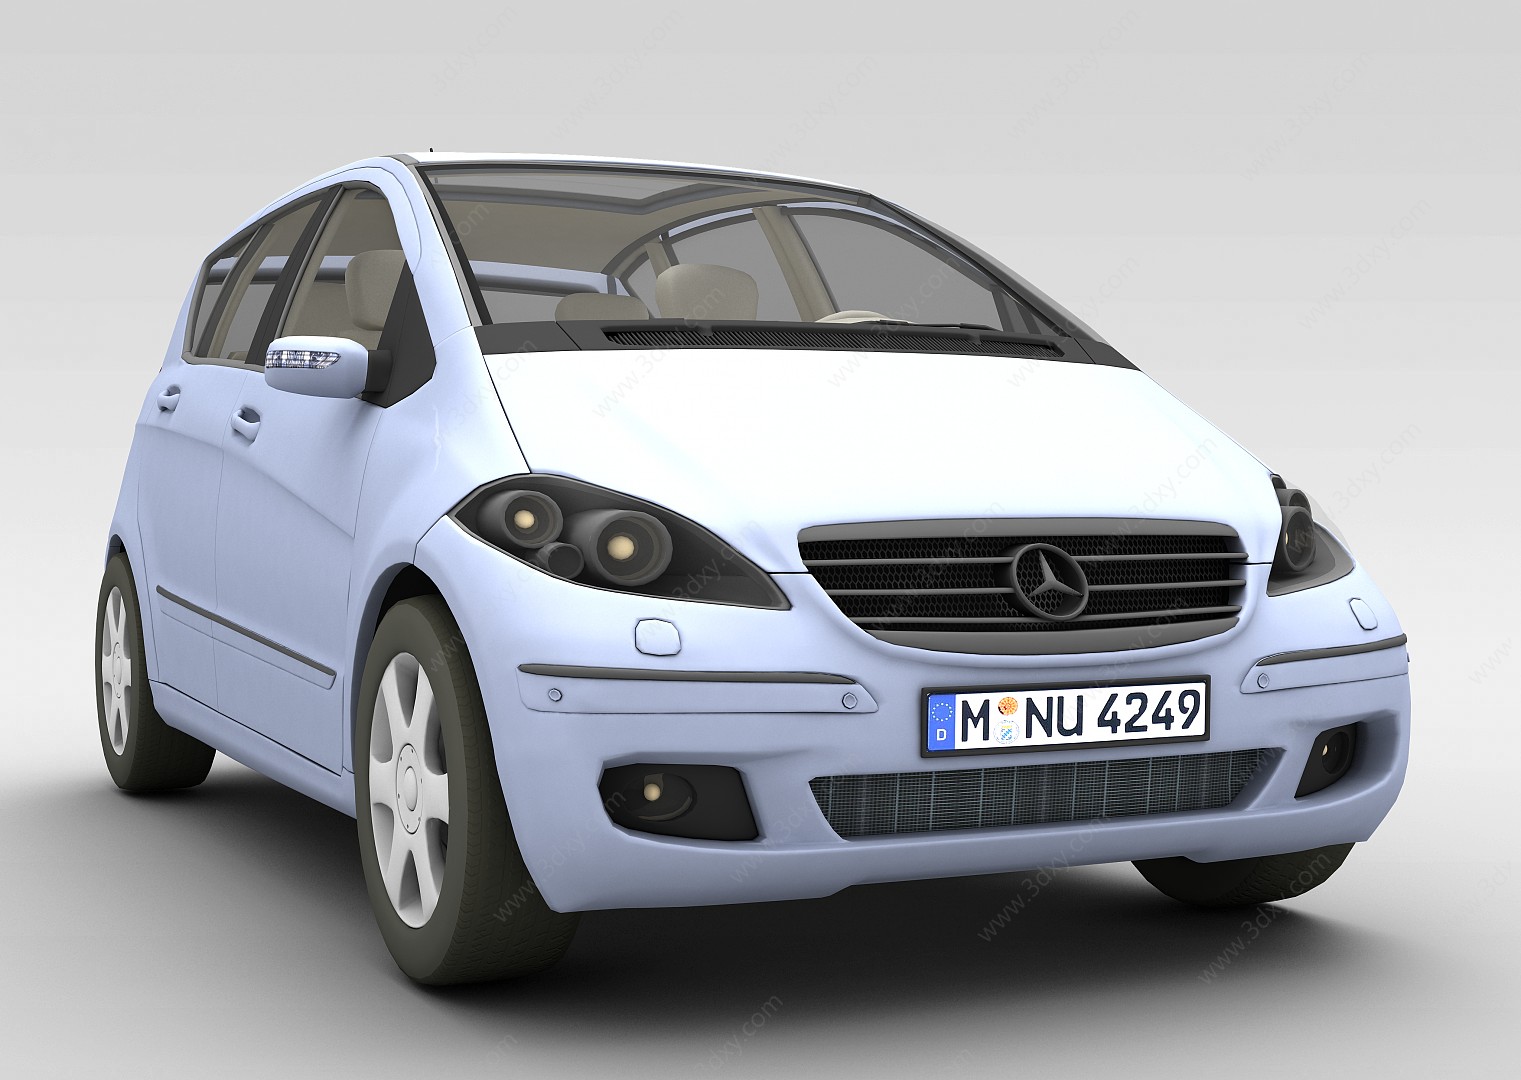 奔驰汽车3D模型